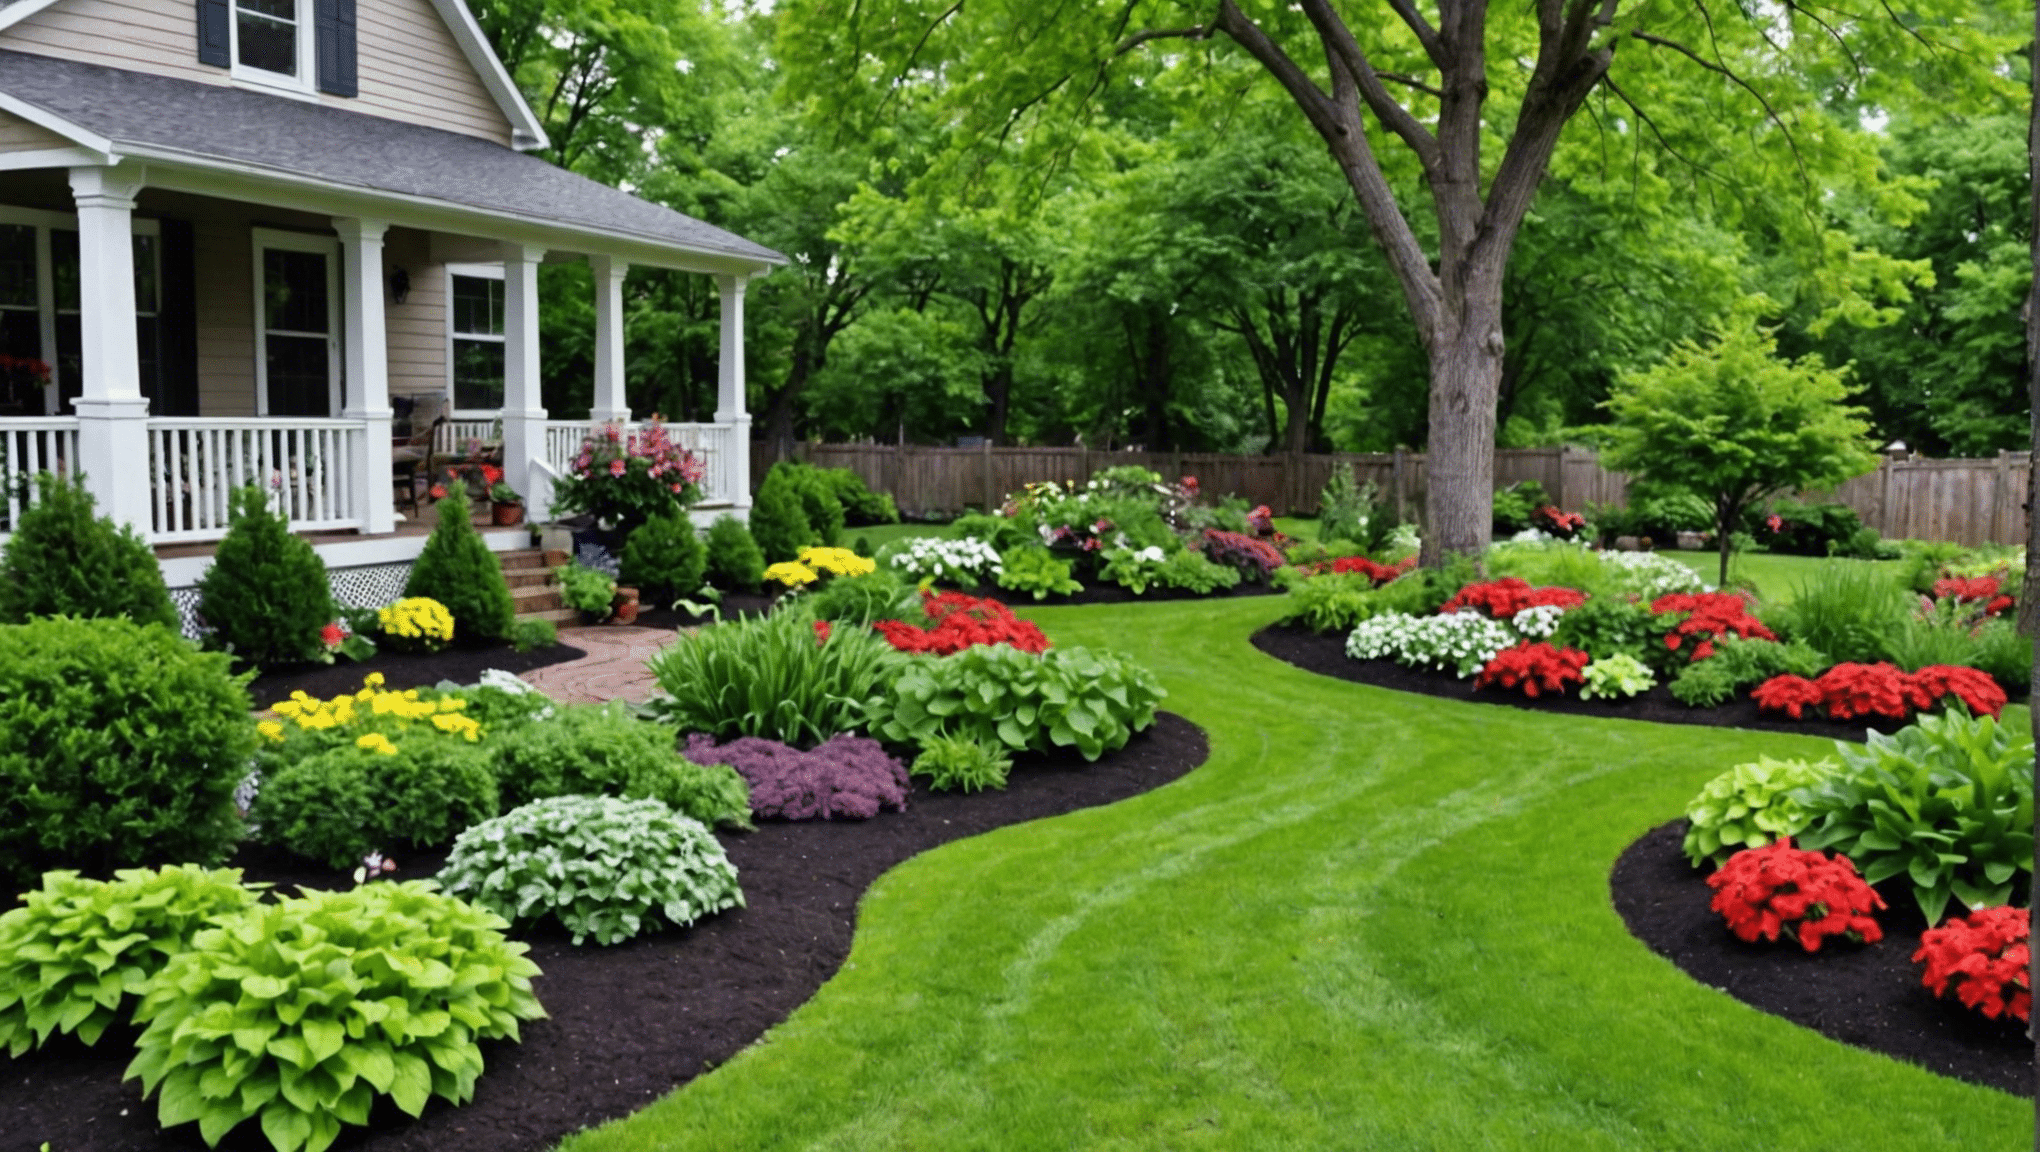 zainspiruj się pomysłami na ogród warzywny na podwórku, aby przekształcić swoją przestrzeń na świeżym powietrzu w obfity i piękny ogród.